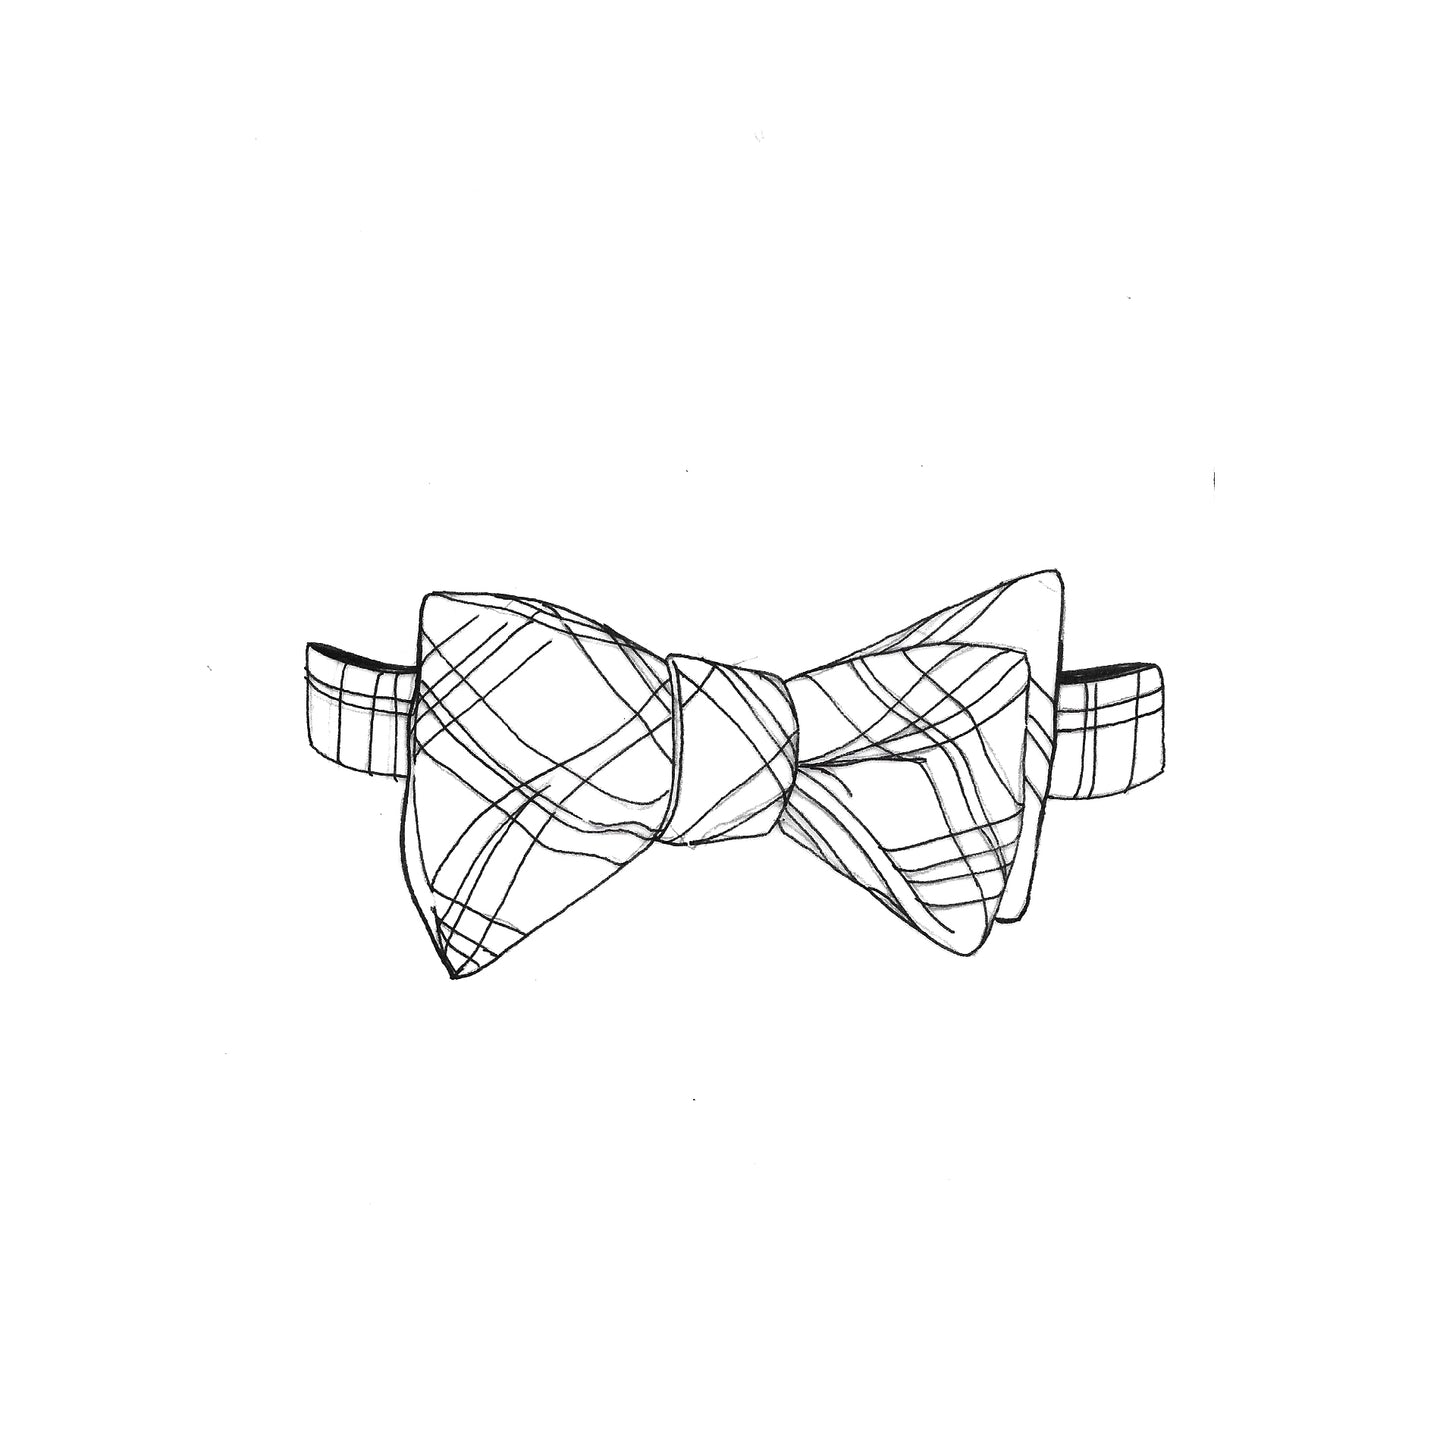 Made-To-Measure Tartan Bow Tie (Pre-Tied)